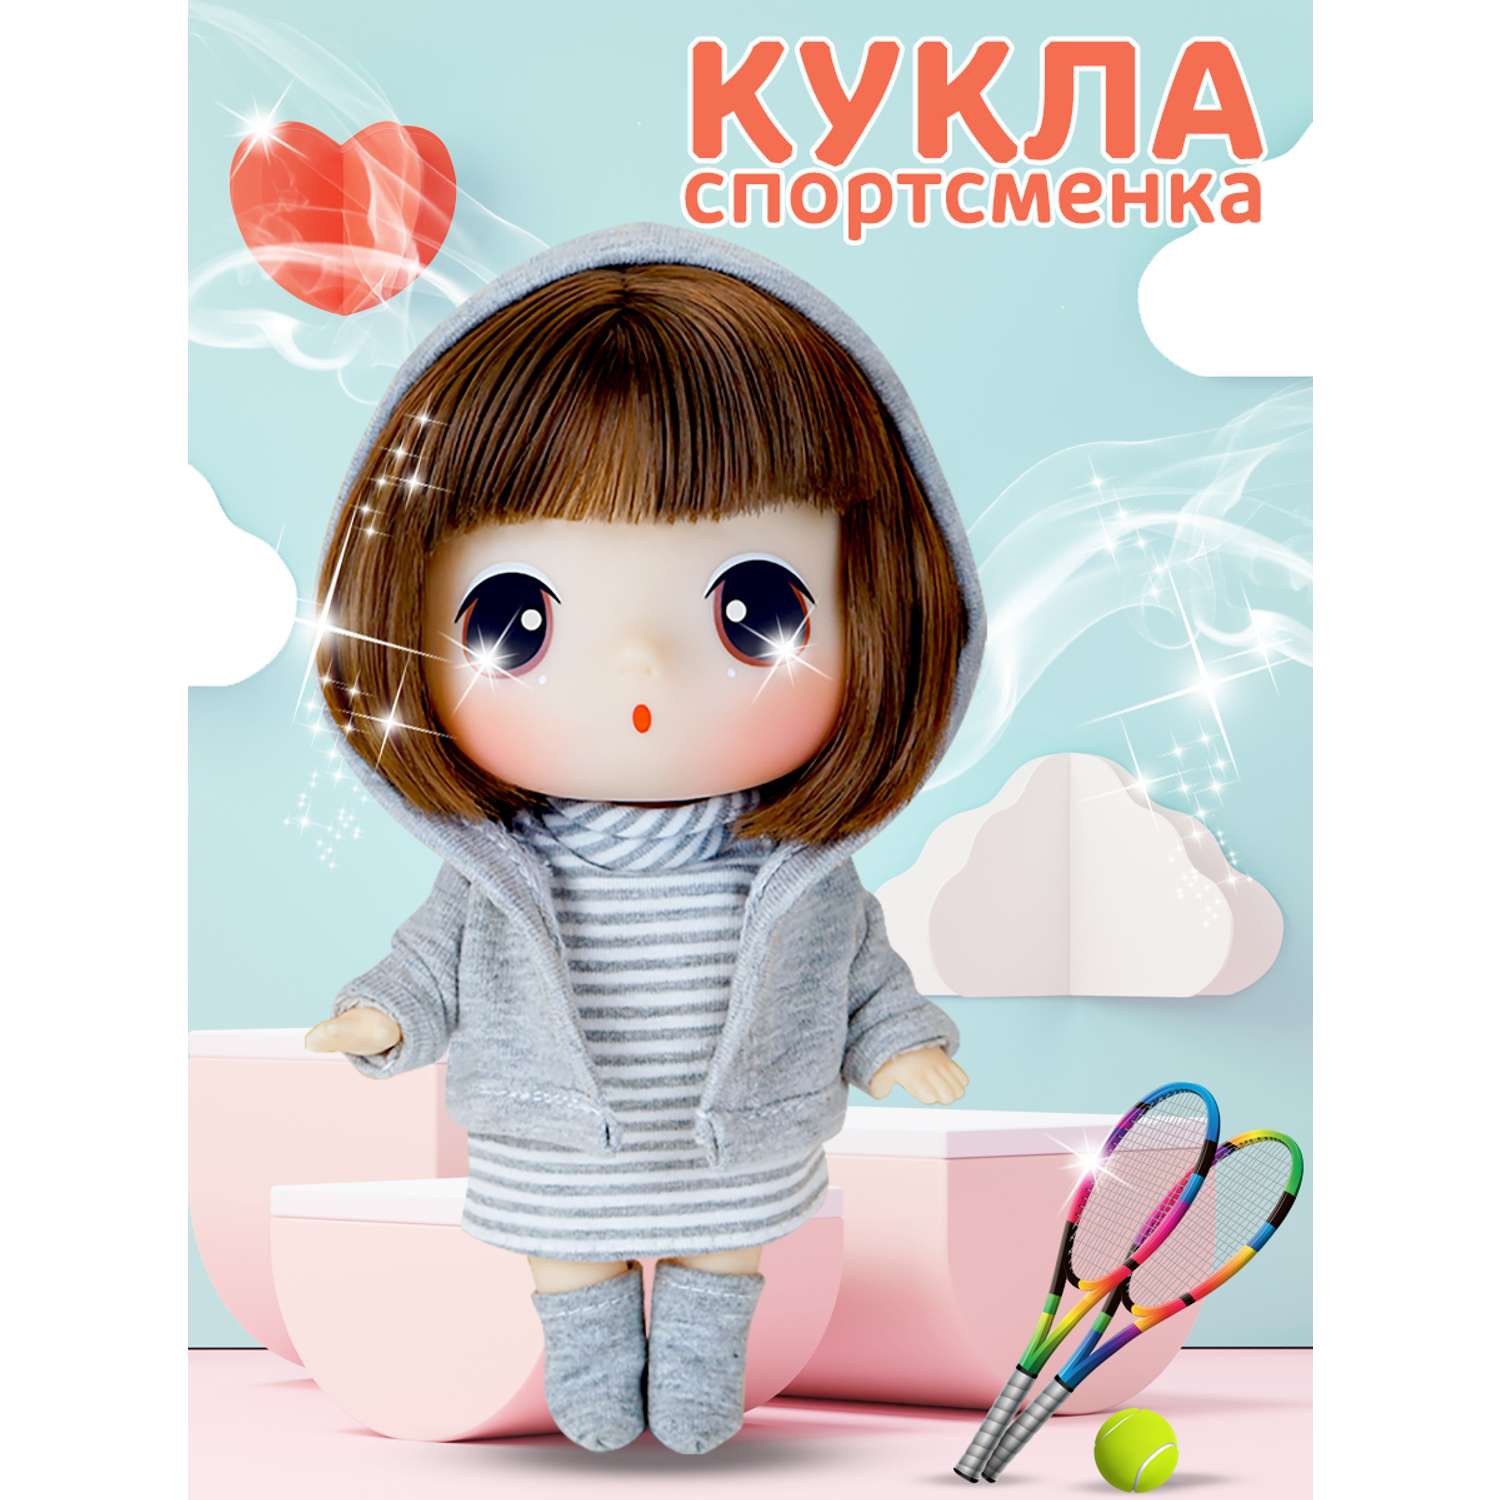 Кукла DDung Спортсменка 18 см корейская игрушка аниме FDE1816 - фото 1